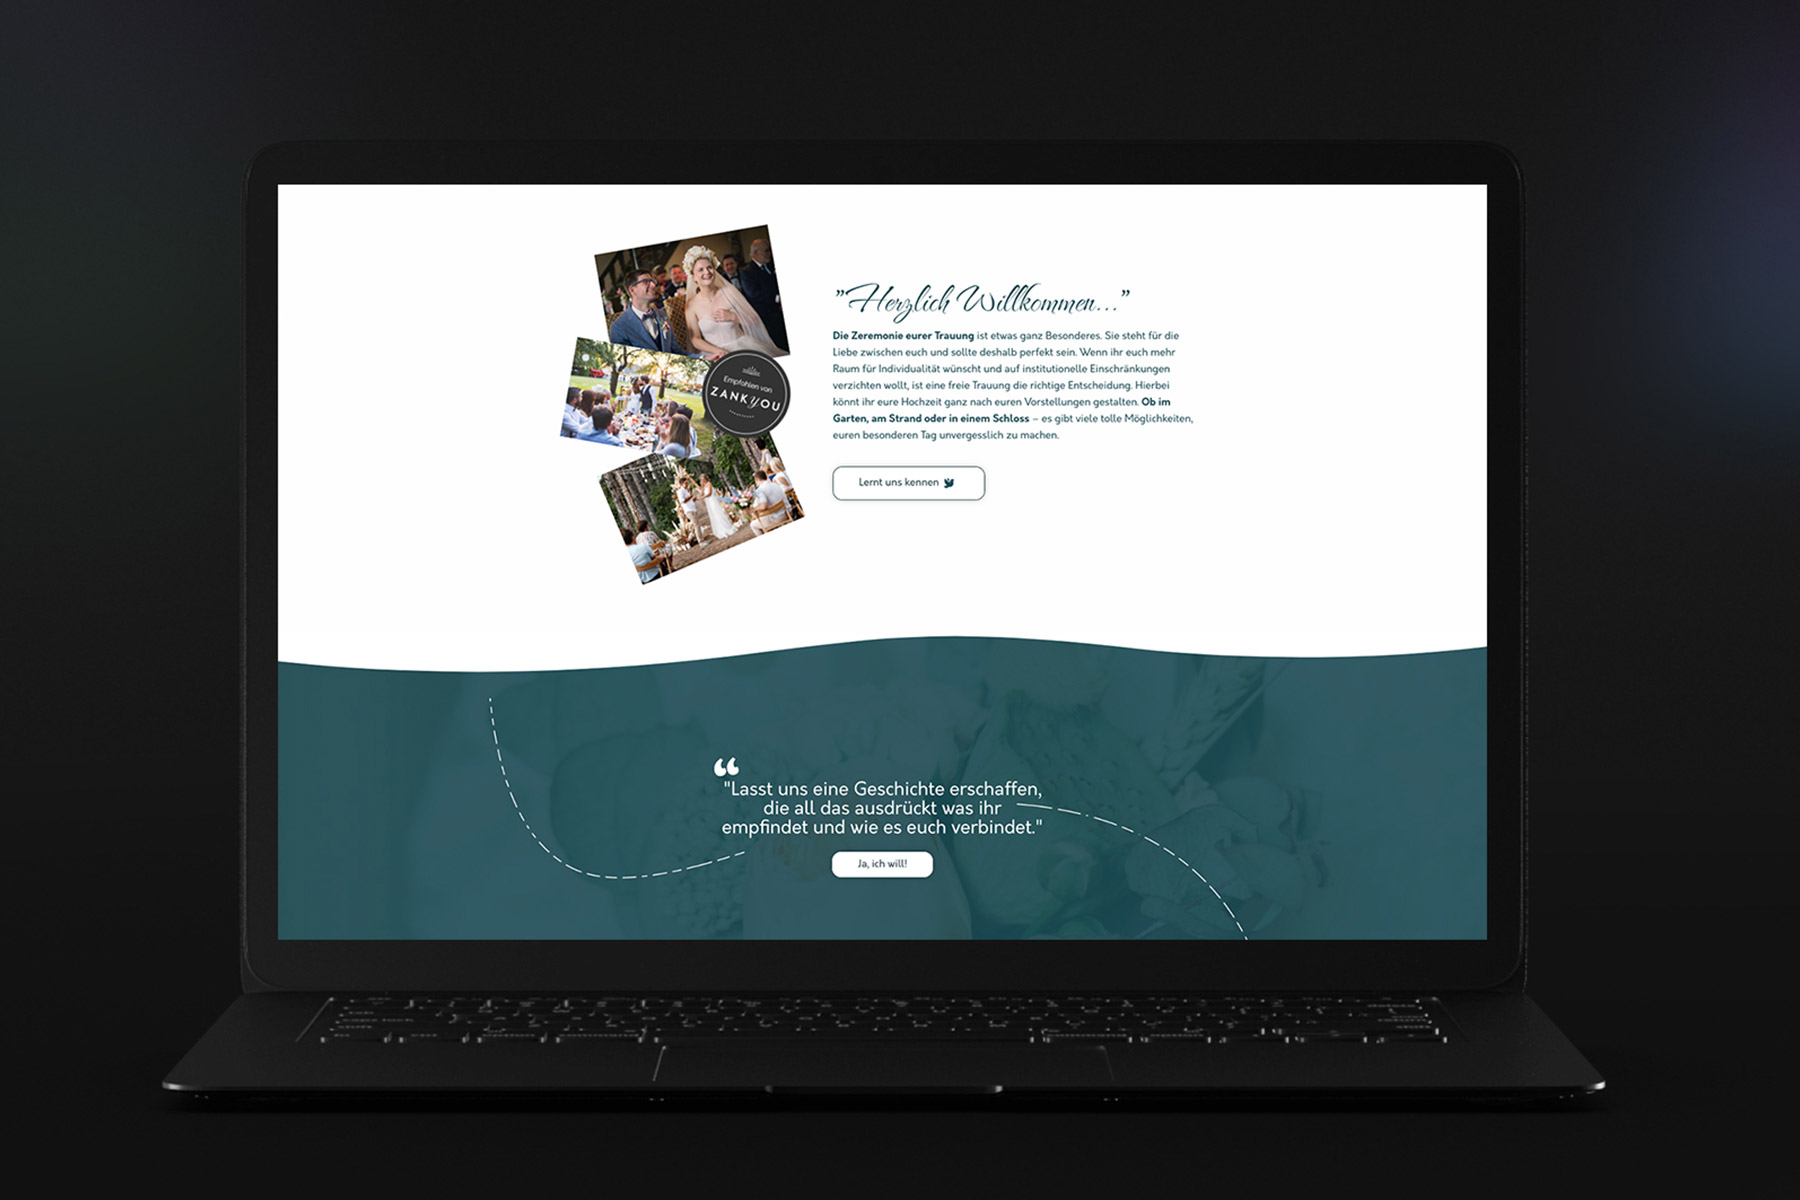 Abschnitt einer Website eines freien Redners, auf der Hochzeitsbilder und ein Text zu sehen sind. Angezeigt auf einem schwarzen Laptop.